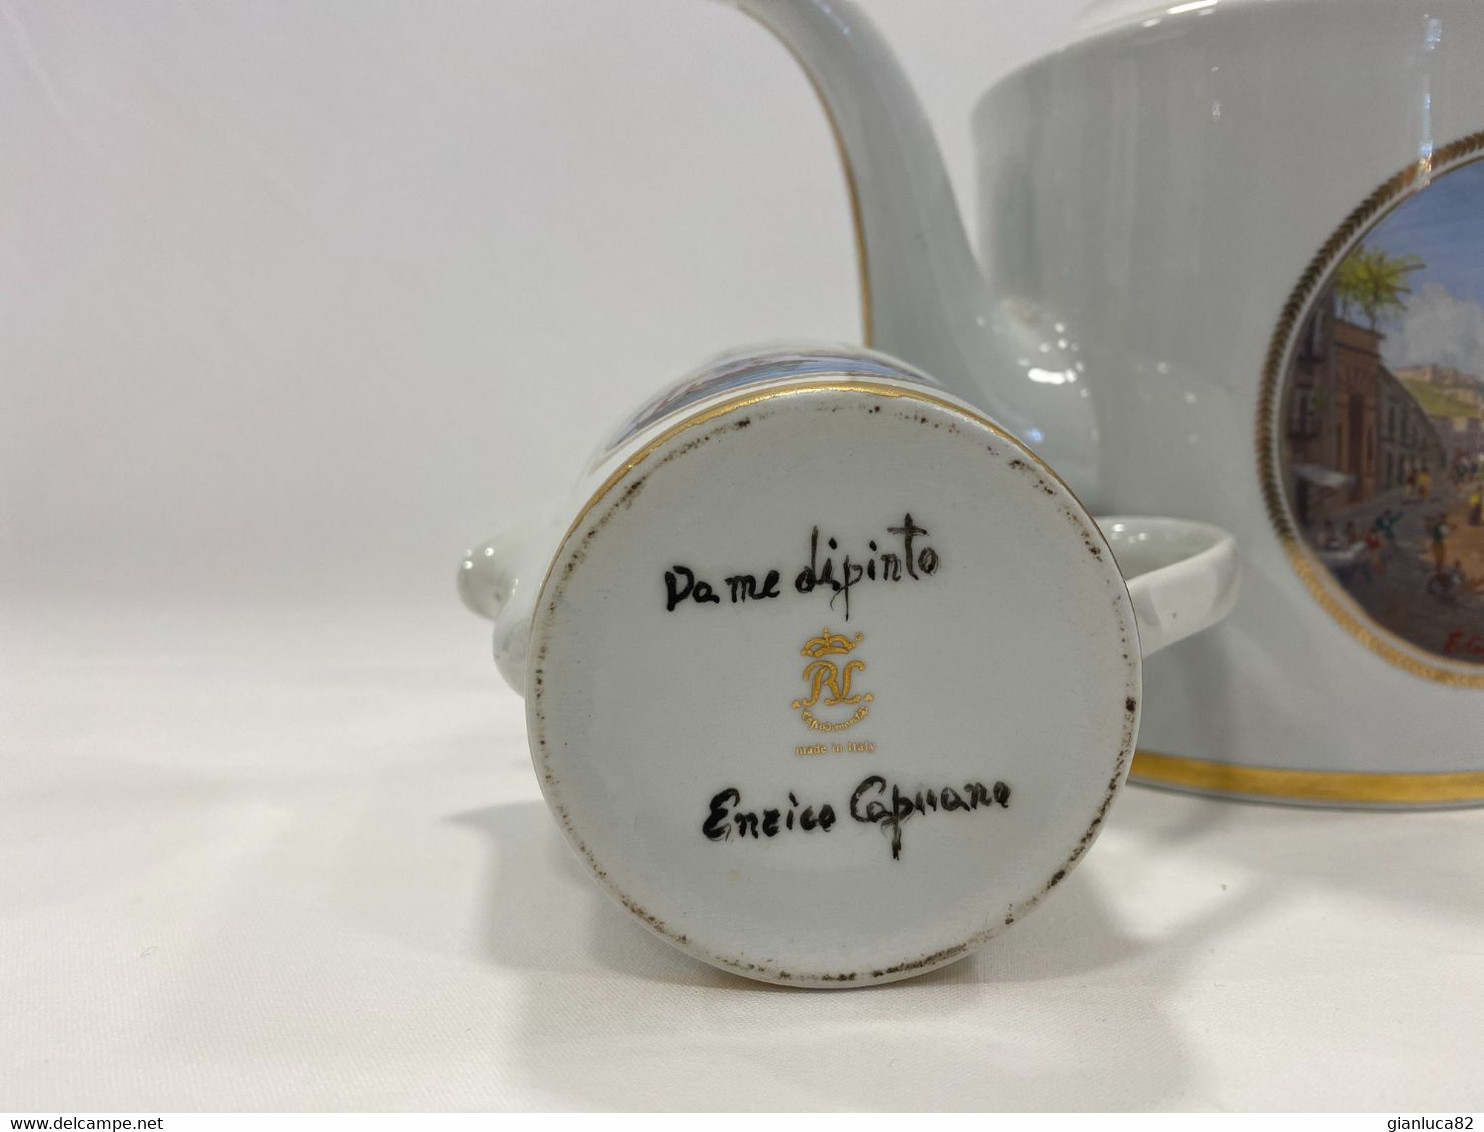 Servizio da the di porcellana bianca Capodimonte Dip. Enrico Capuano (G03)